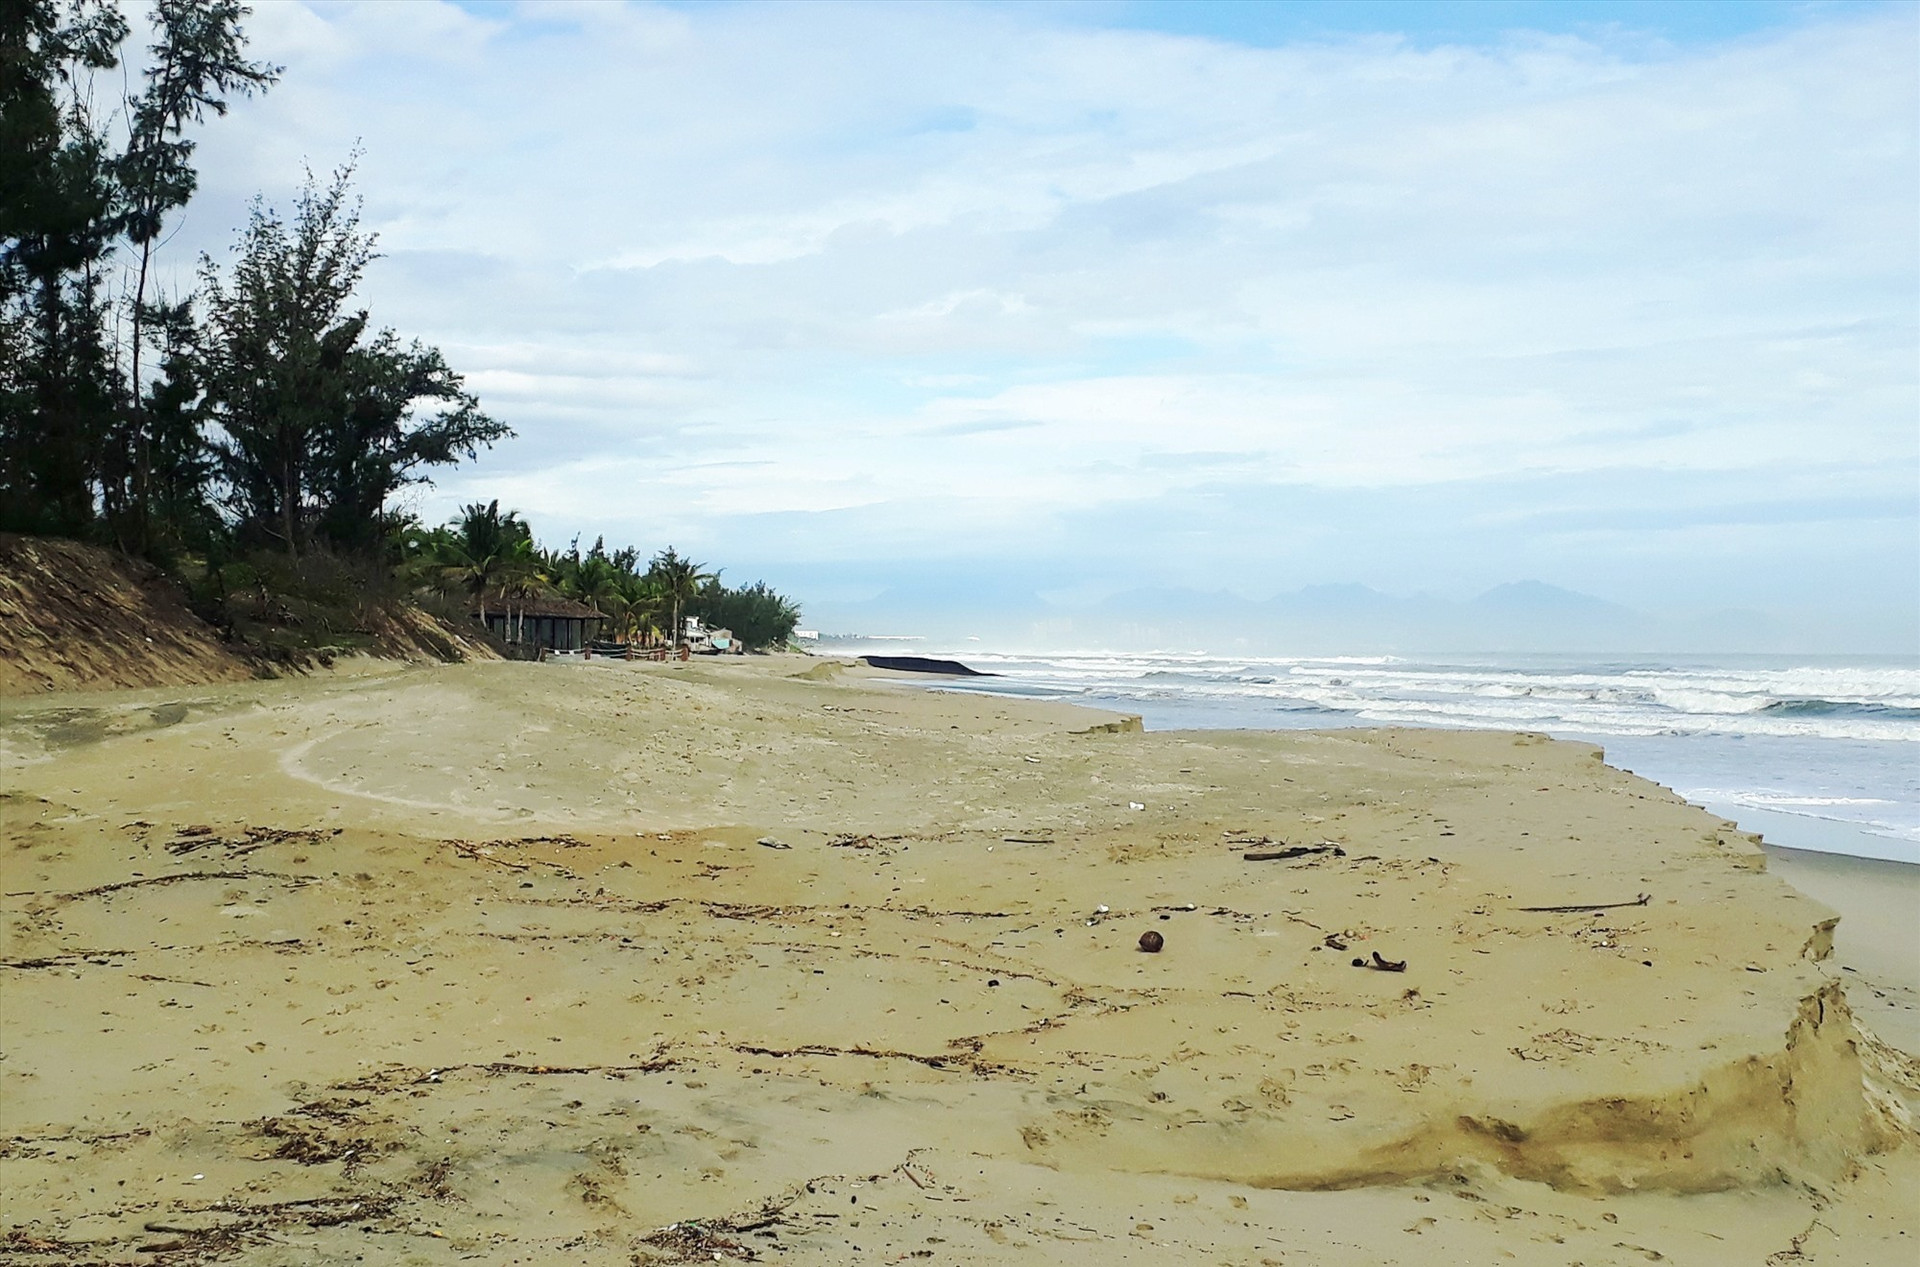 Bãi biển Cửa Đại bị sạt lở nghiêm trọng do ảnh hưởng của thiên tai và biến đổi khí hậu.